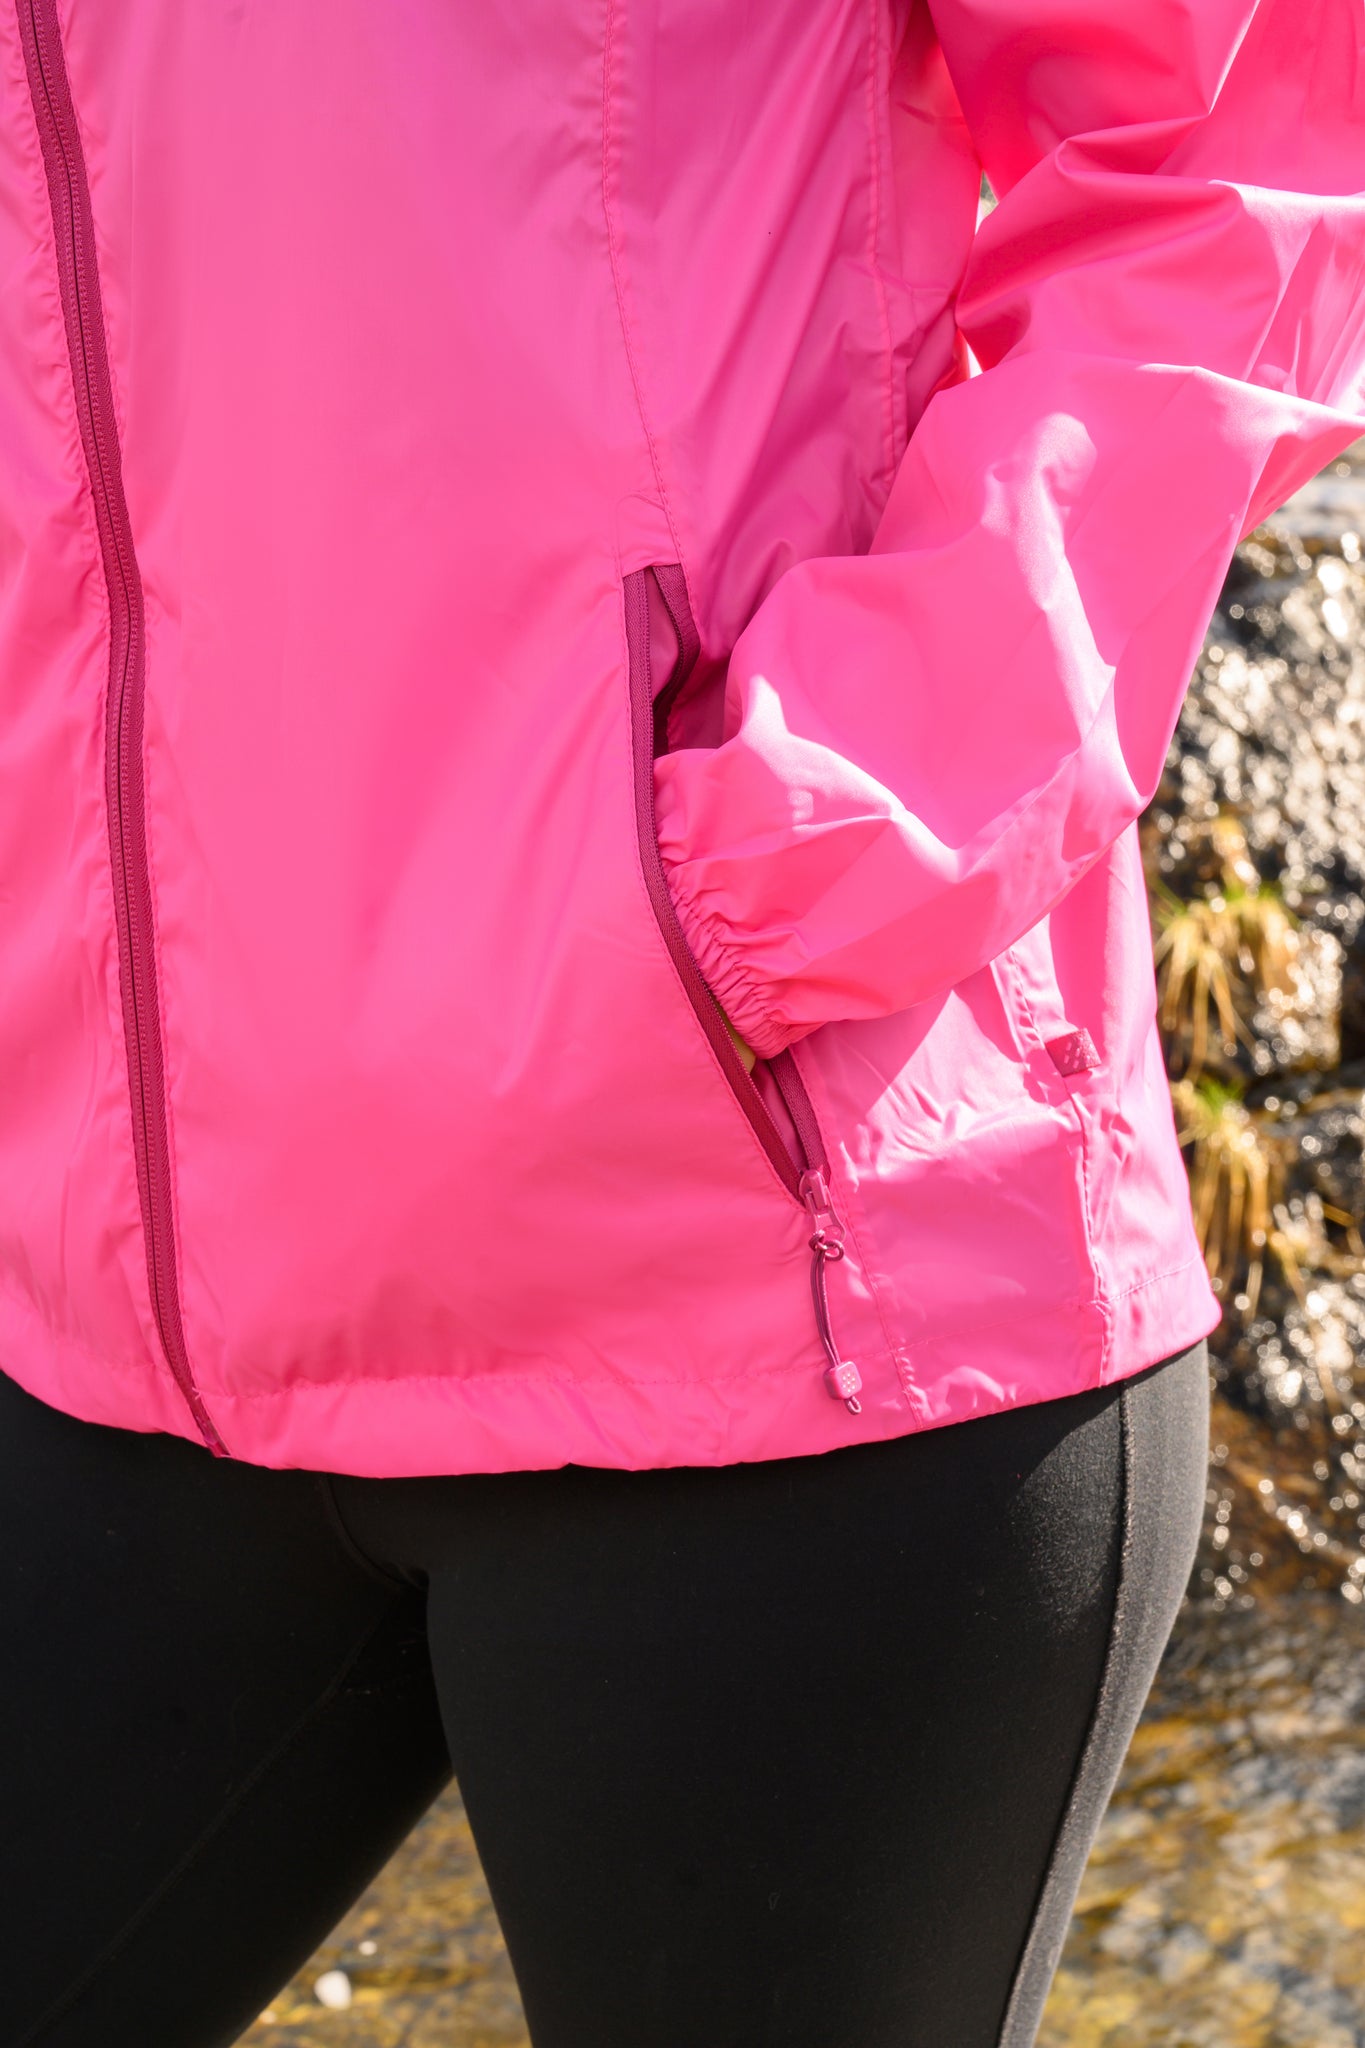 Origin Packable Waterproof Jacket - Pink Tonal Zip